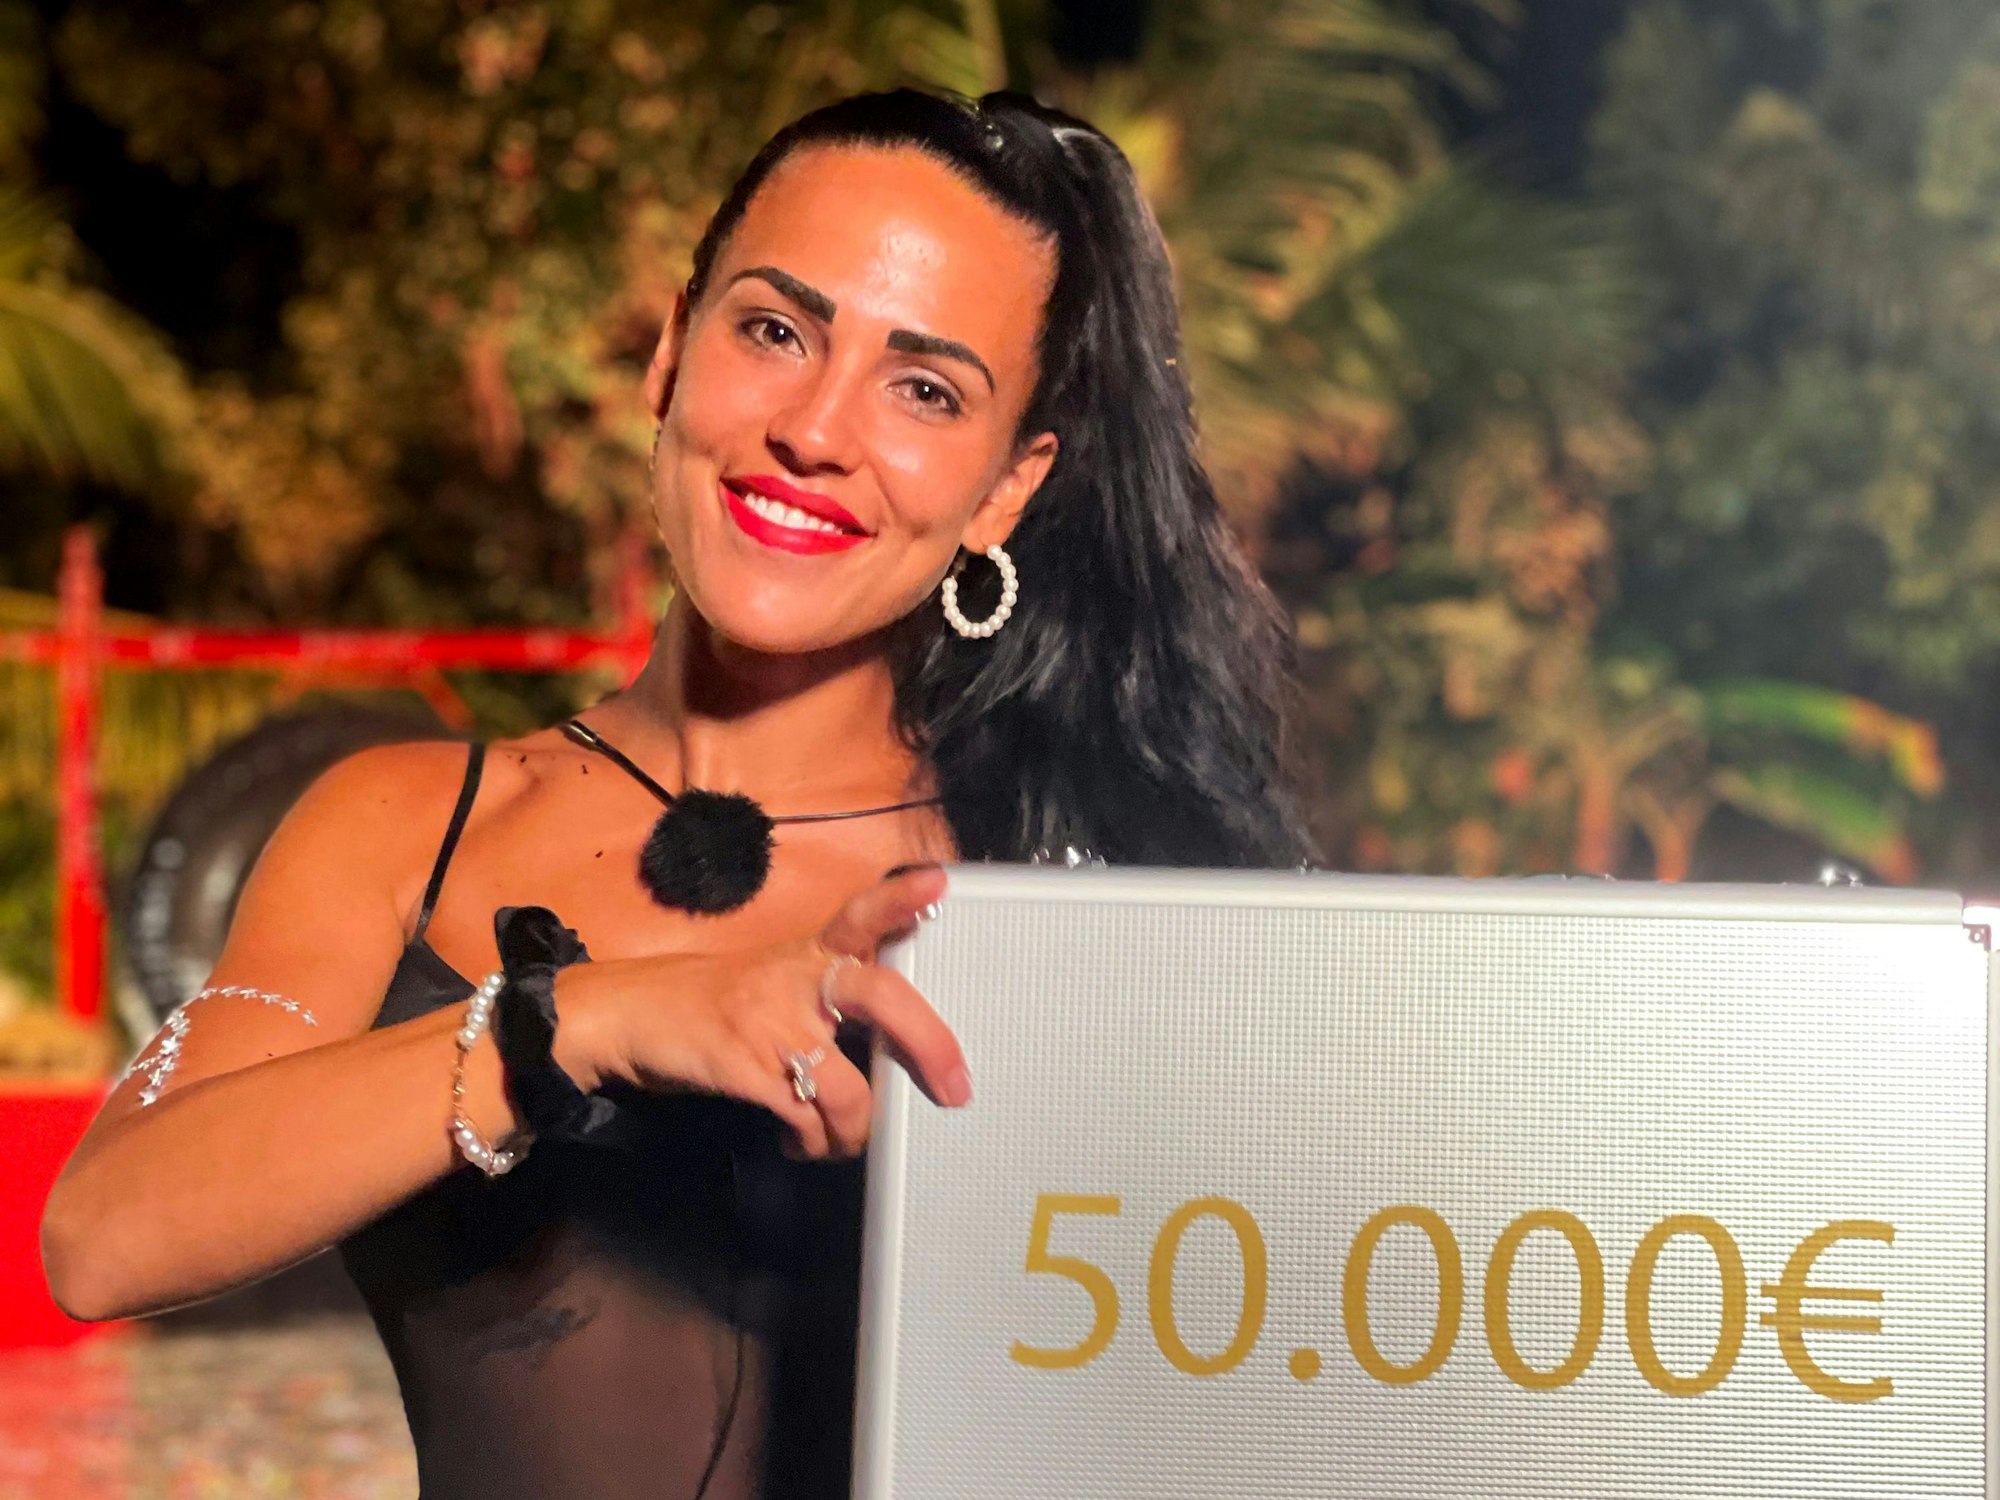 Elena ist die strahlende Gewinnerin von 50.000 Euro.